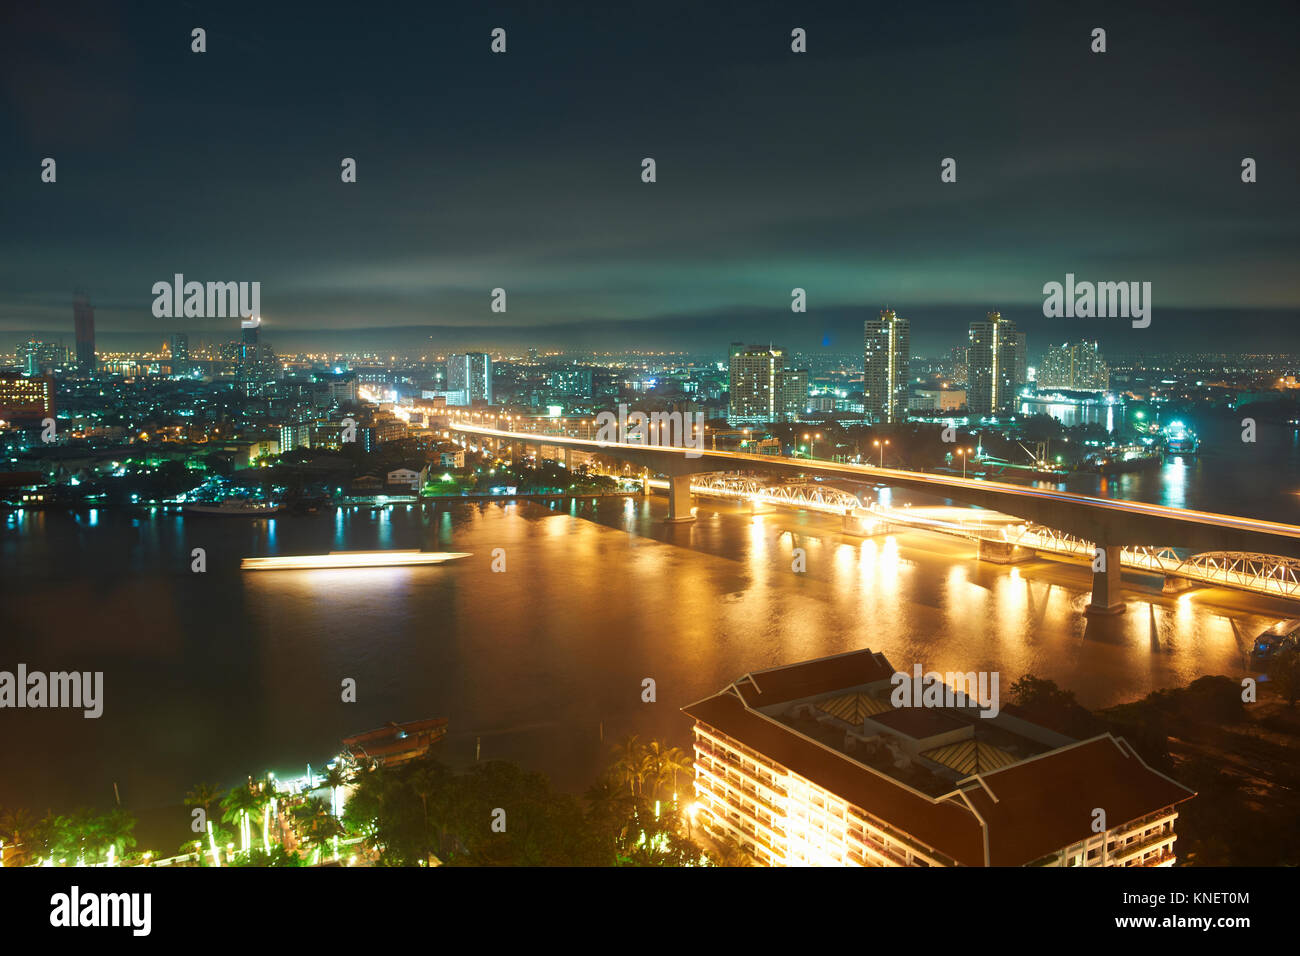 Night cityscape with bridge over Chao Phraya river, Bangkok, Thailand Stock Photo